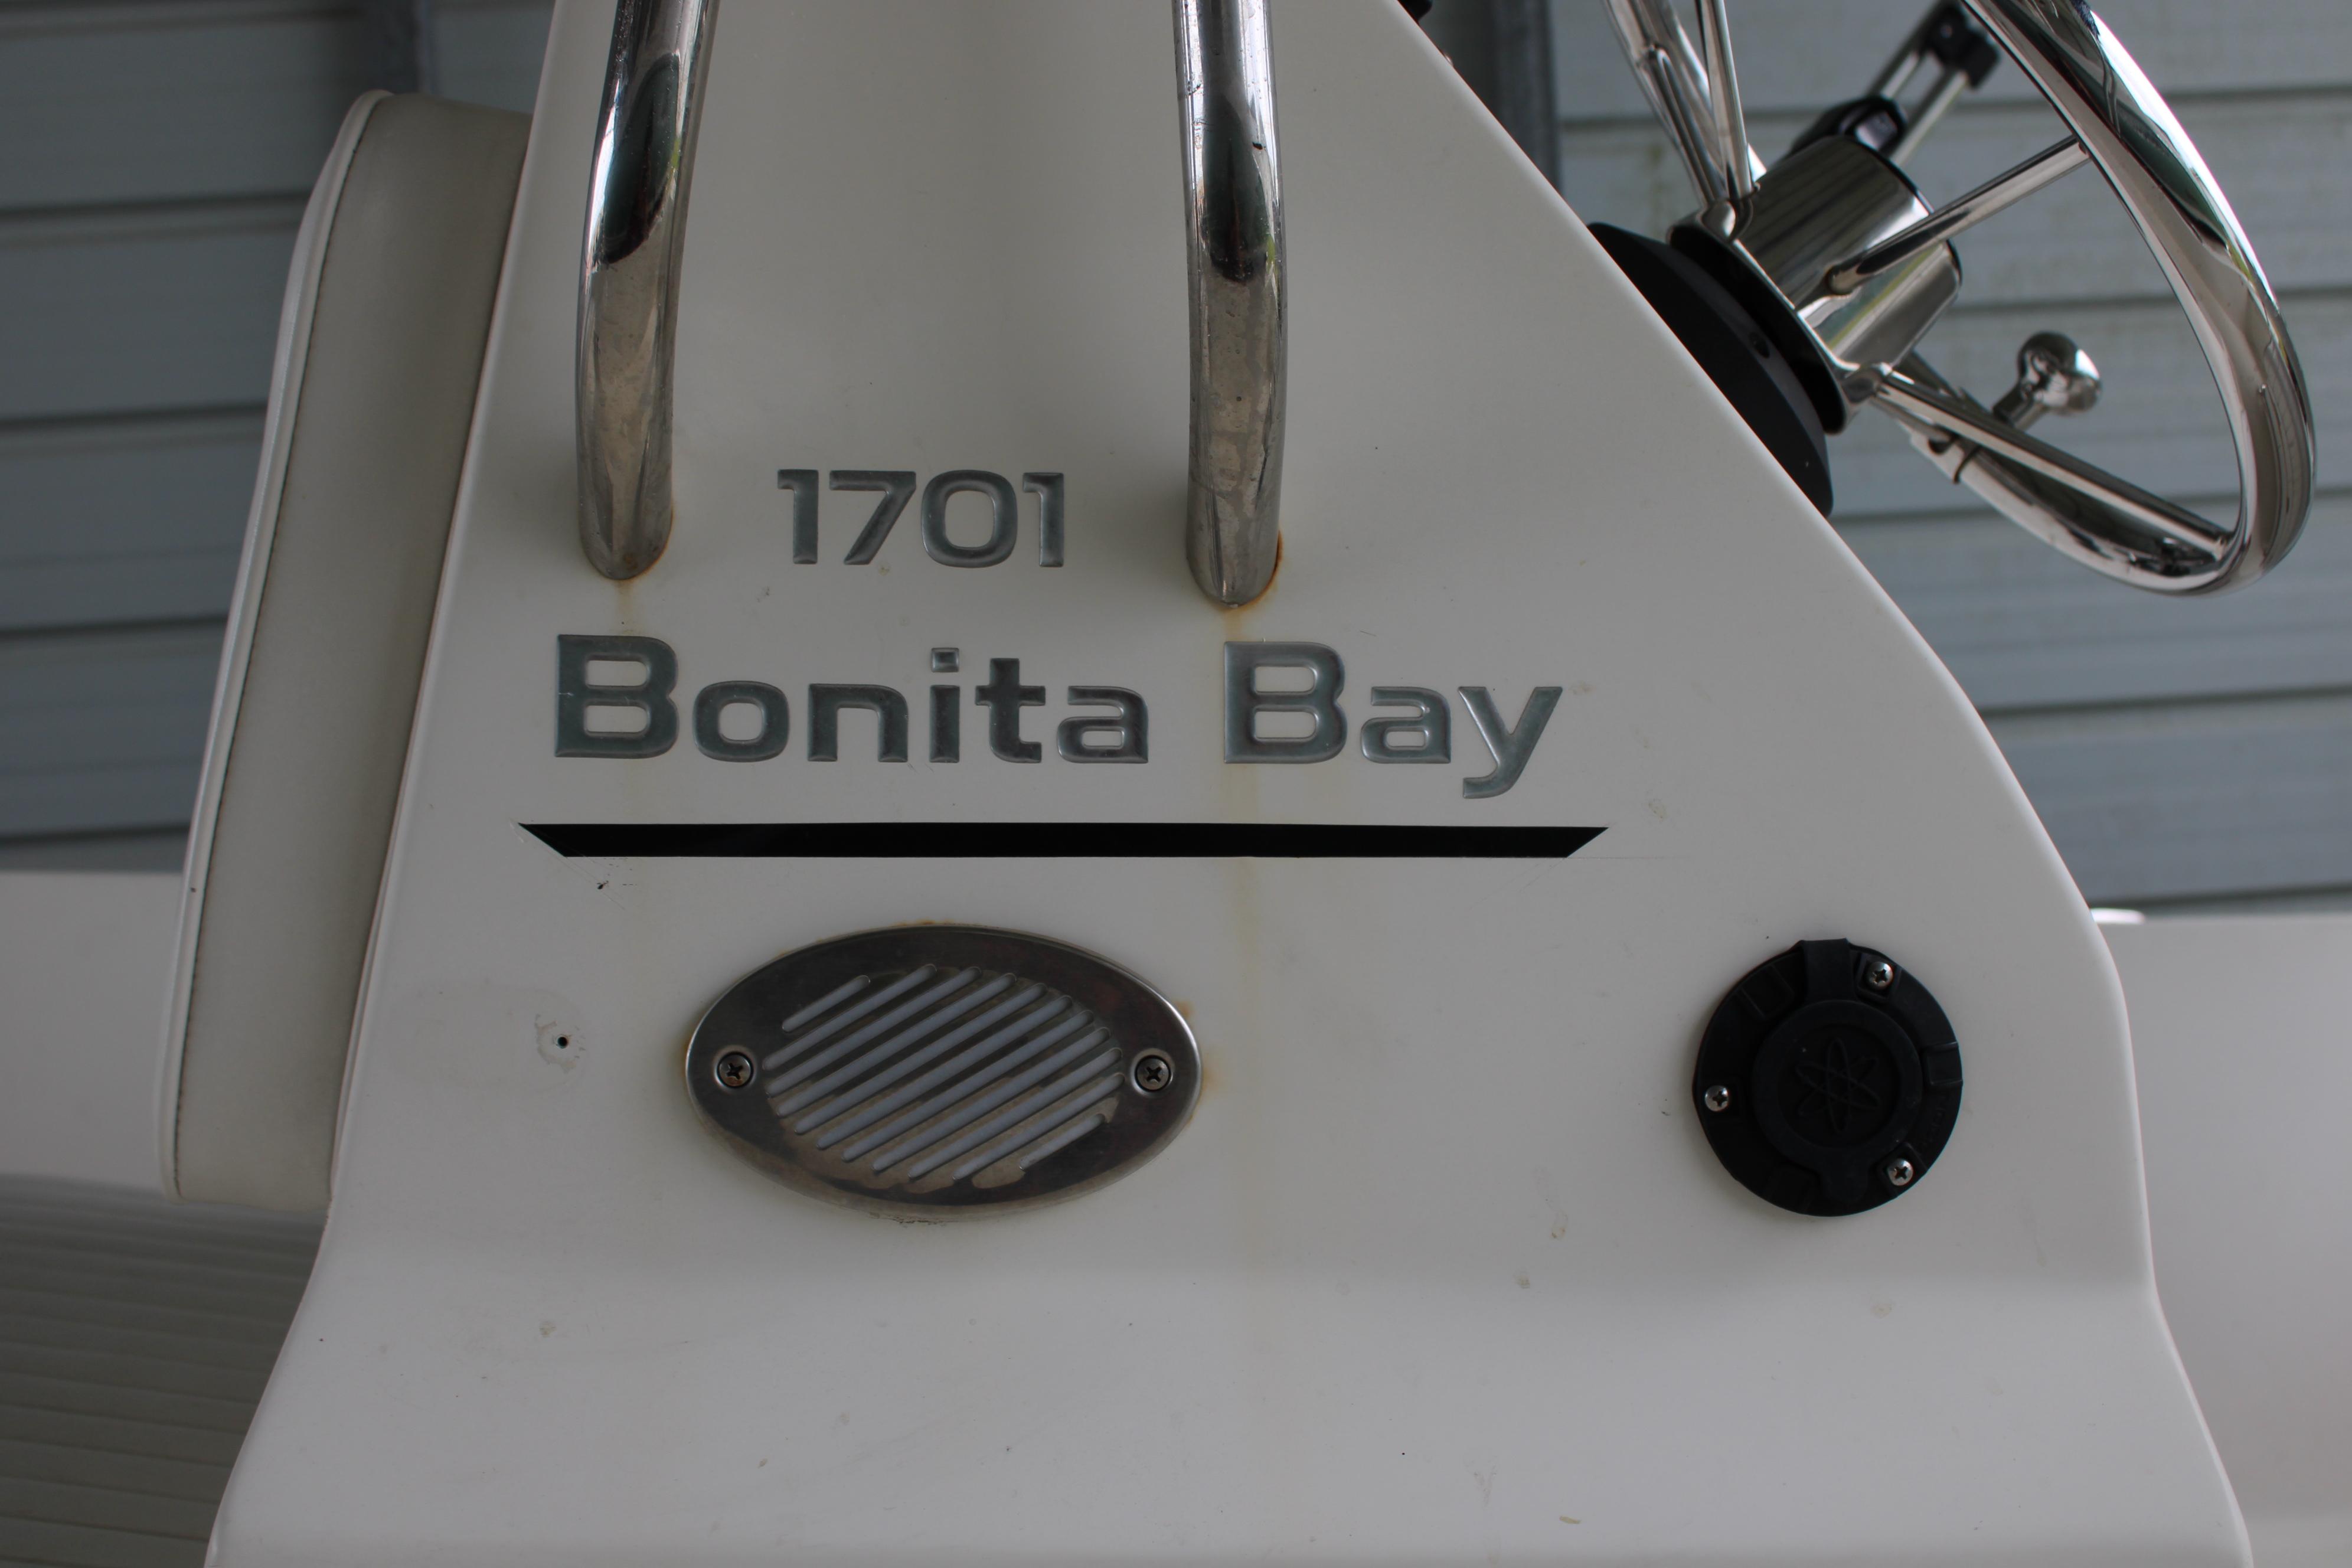 2019 Stumpnocker 1701 Bonita Bay